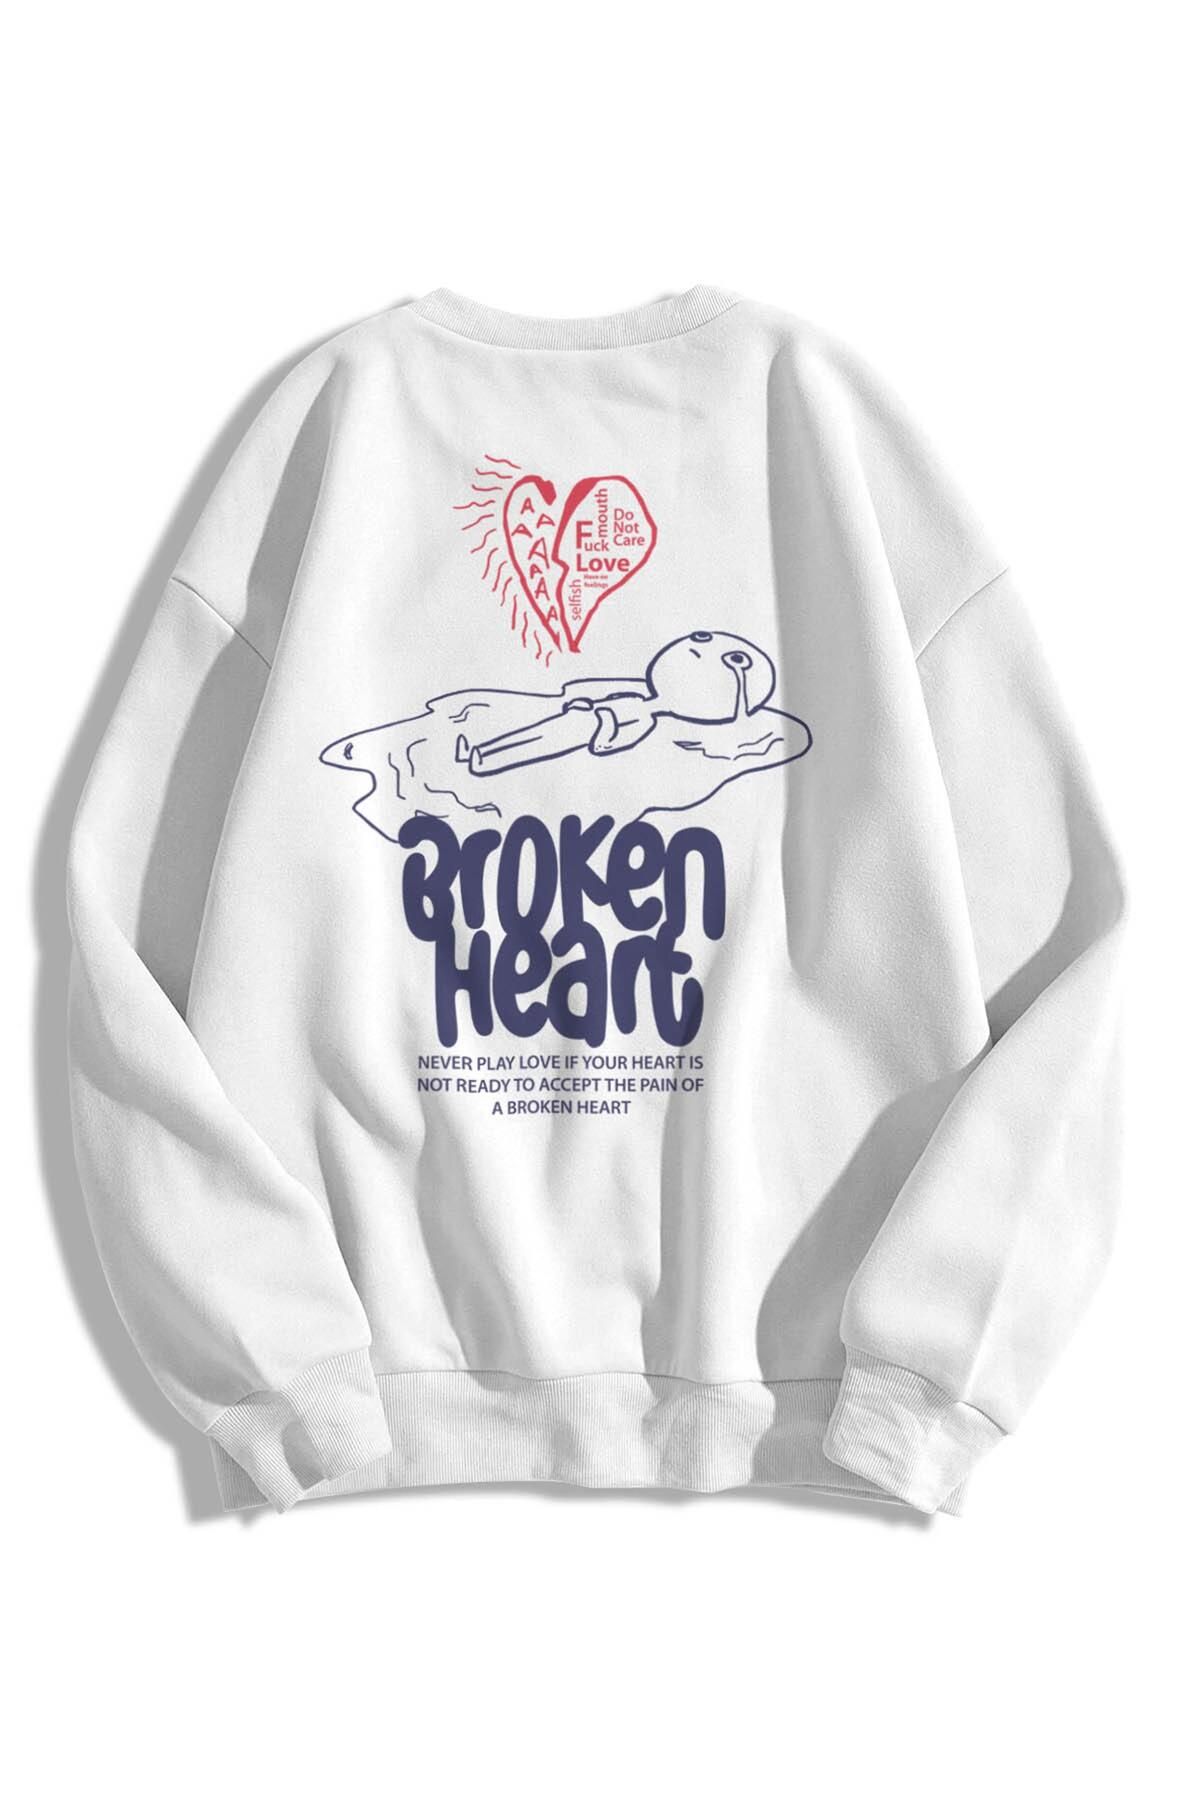 Trendiz Unisex Broken Heart Bisiklet Yaka Sweatshirt Hoodie Beyaz